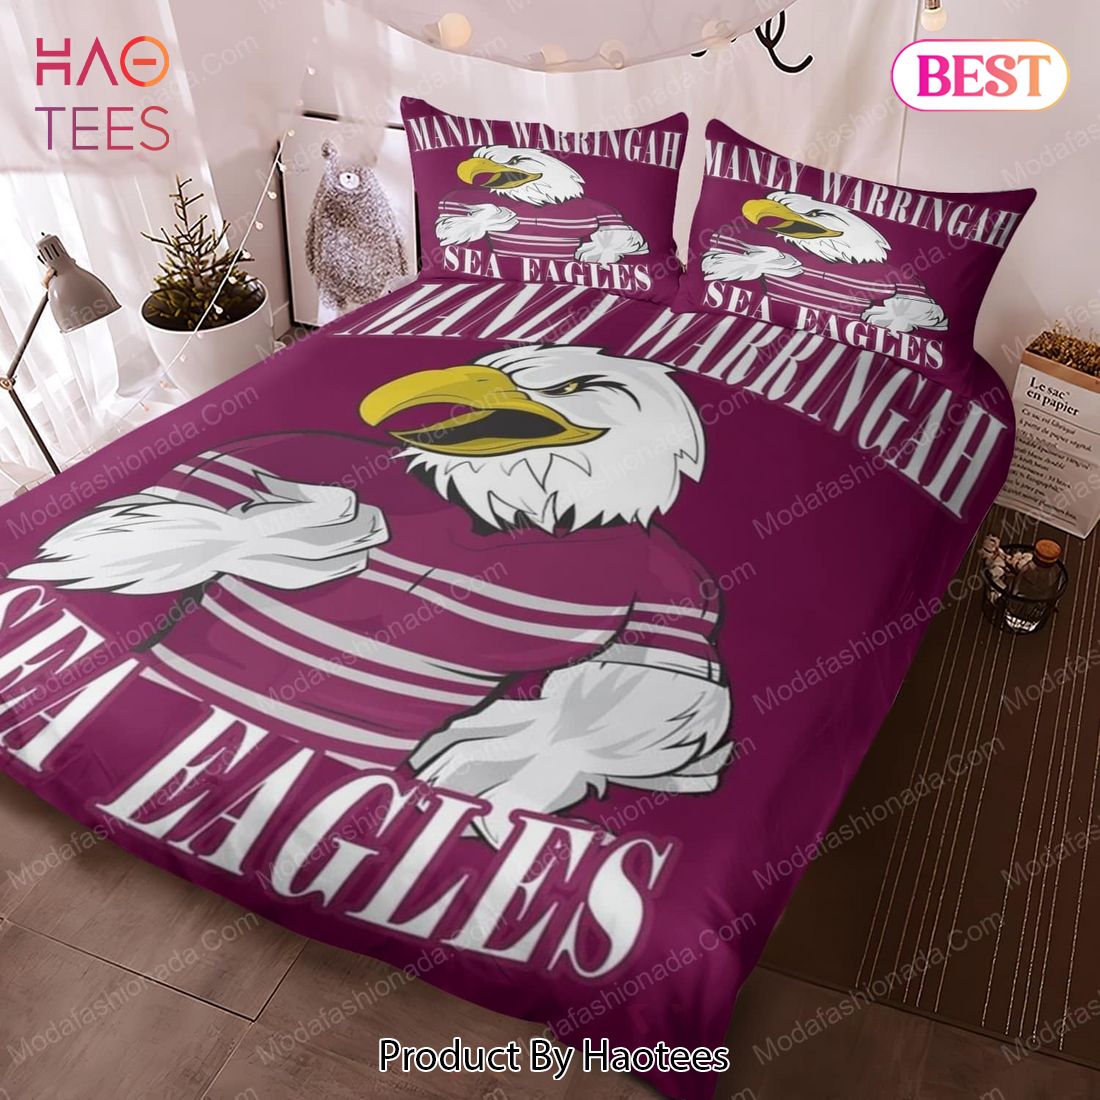 Buy Manly Warringah Sea Eagles Logo Bedding Sets 01 Bed Sets, Bedroom Sets, Comforter Sets, Duvet Cover, Bedspread